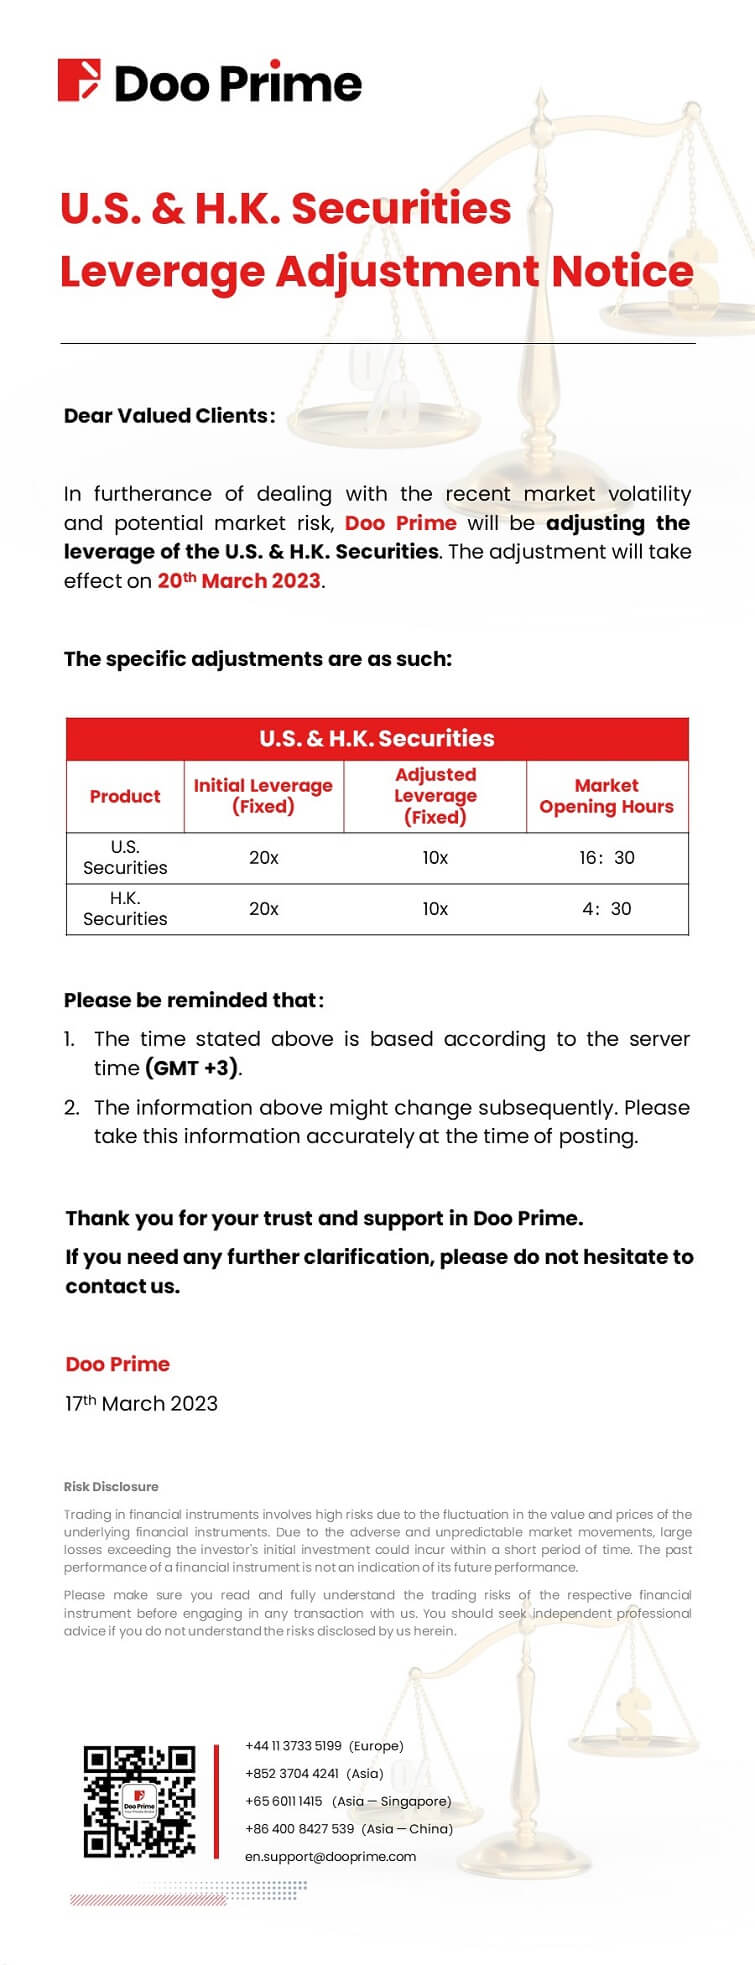 Doo Prime U.S. & H.K. Securities Leverage Adjustment Notice